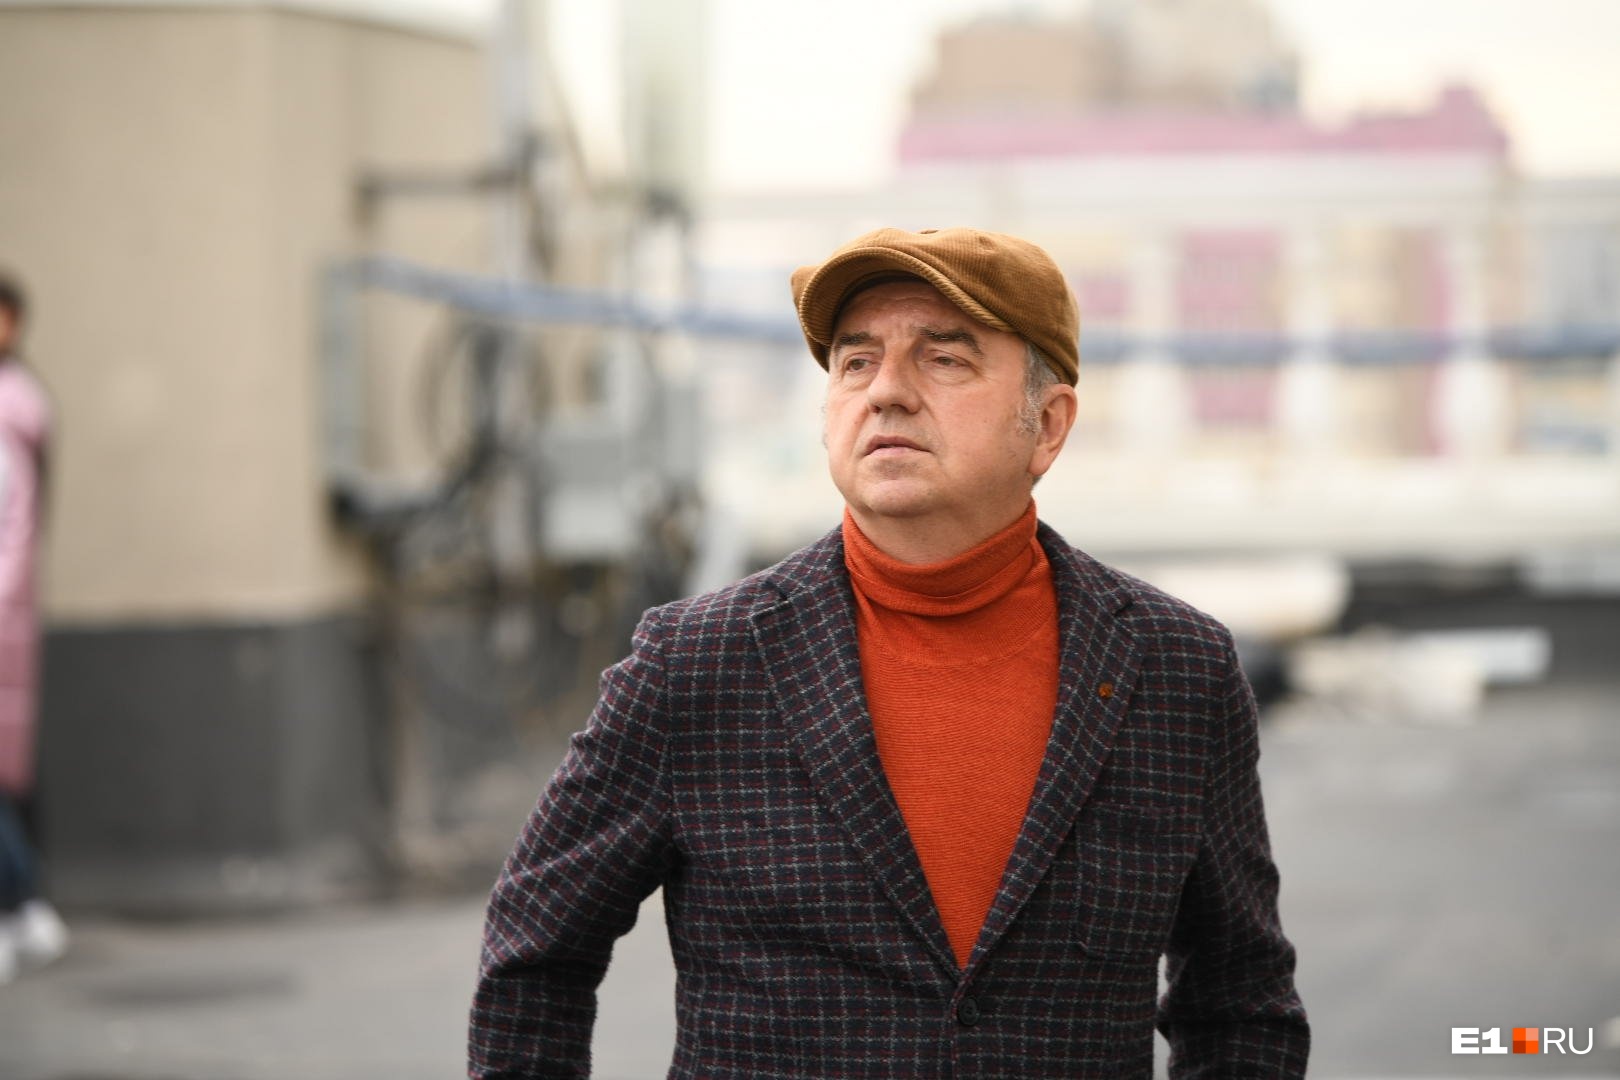 «Мы заслужили концерт на крыше»: Владимир Шахрин — о выступлении под часами мэрии и новом альбоме